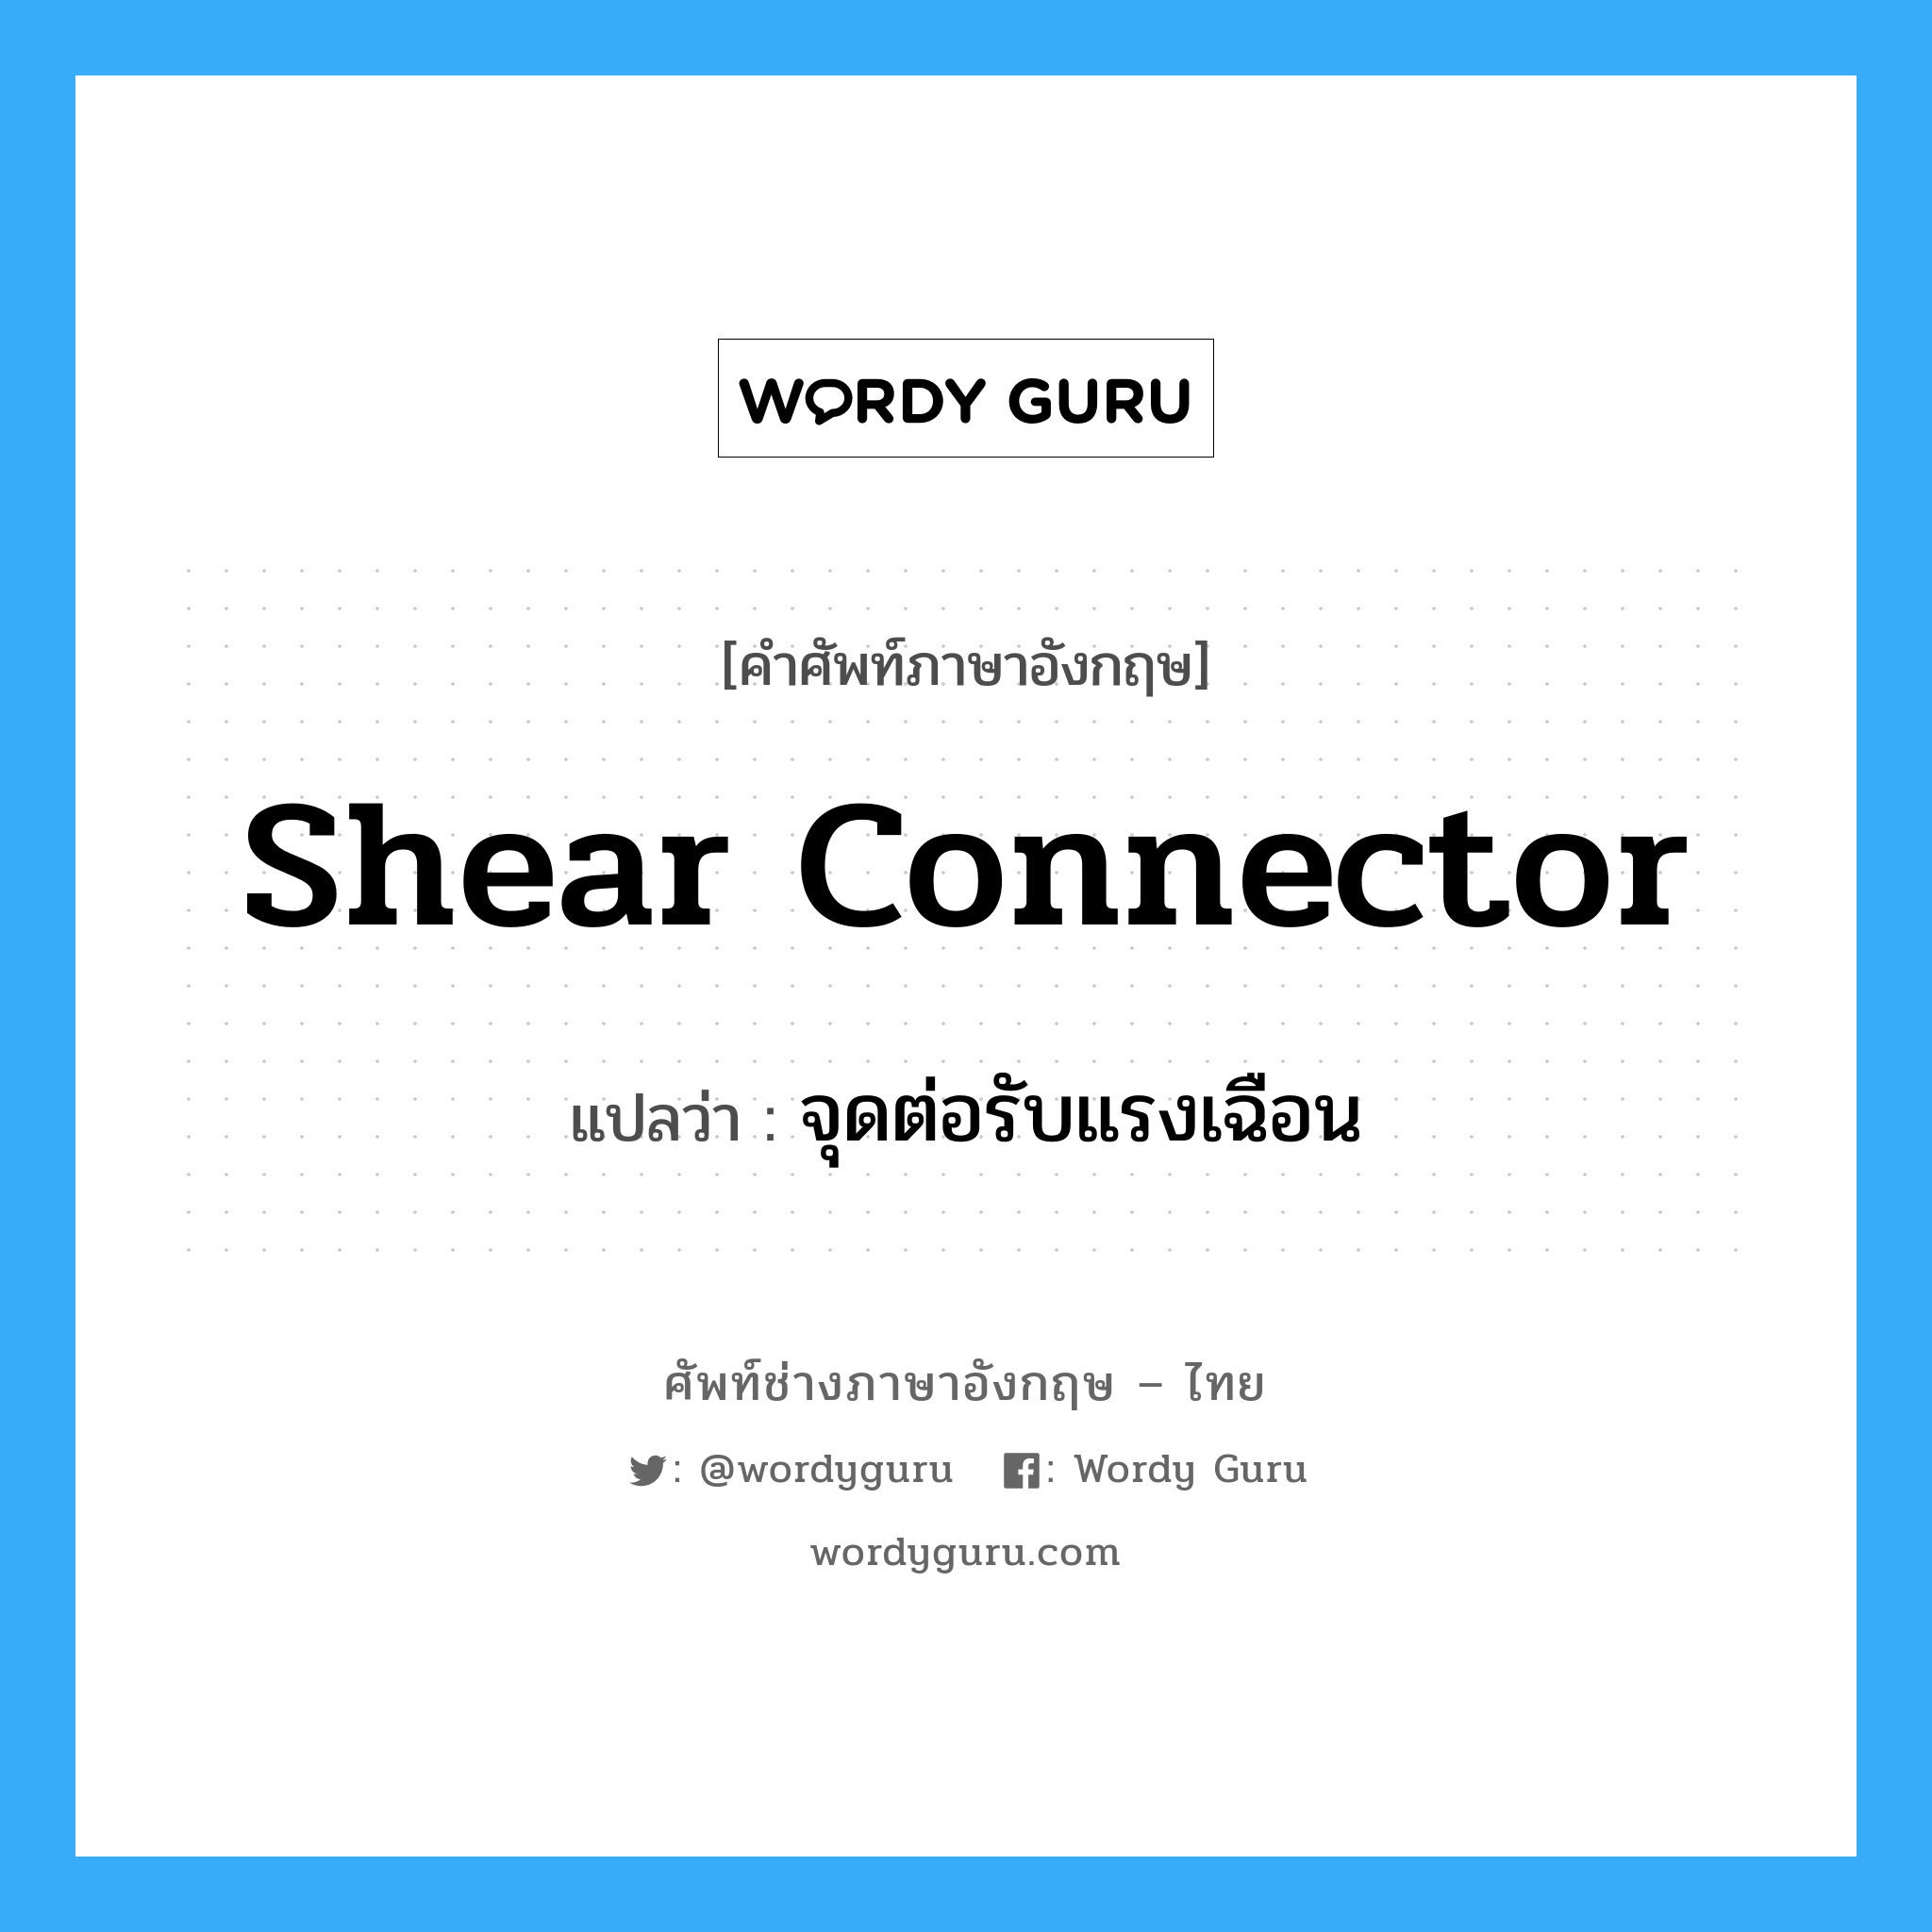 จุดต่อรับแรงเฉือน ภาษาอังกฤษ?, คำศัพท์ช่างภาษาอังกฤษ - ไทย จุดต่อรับแรงเฉือน คำศัพท์ภาษาอังกฤษ จุดต่อรับแรงเฉือน แปลว่า shear connector